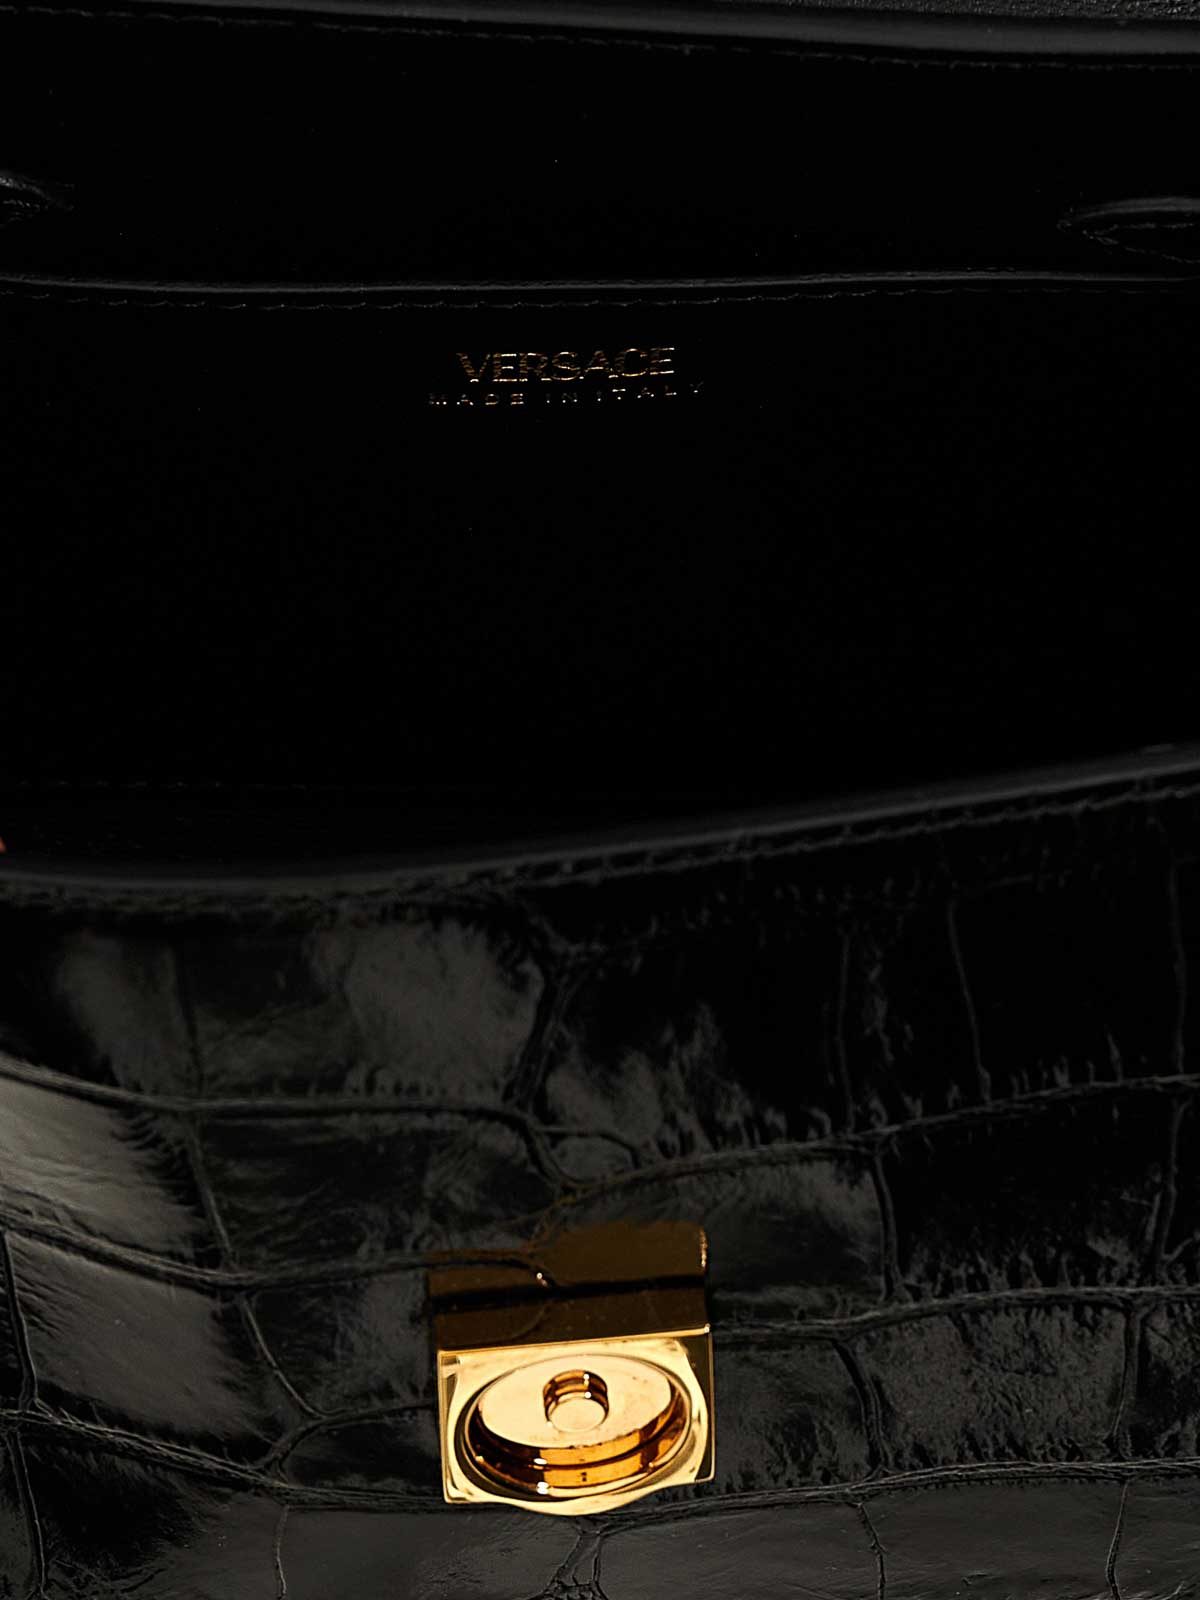 Shop Versace Small Handbag In Black